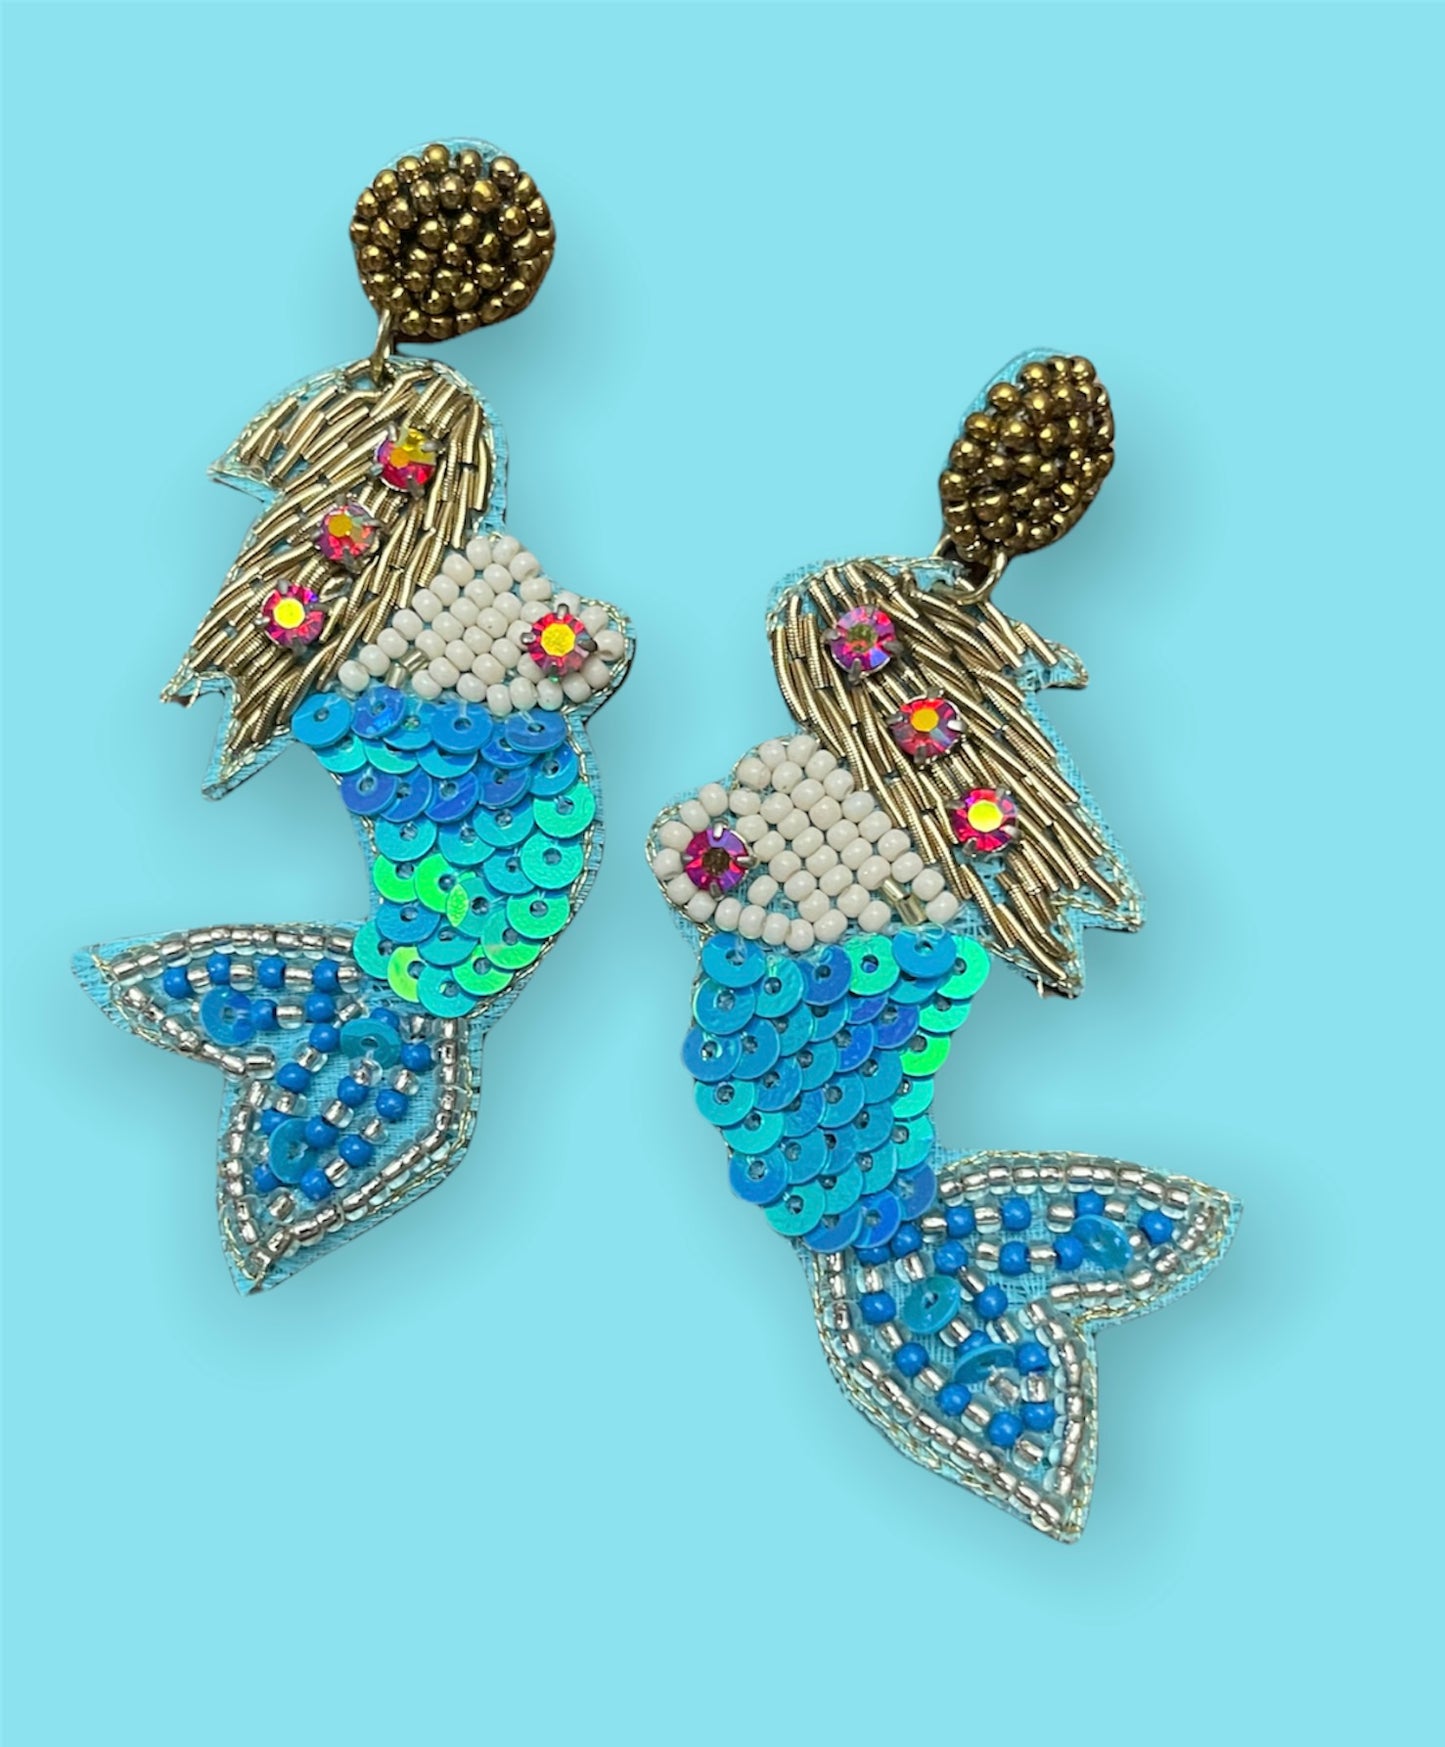 Mermaid Side Earrings - 2 colors